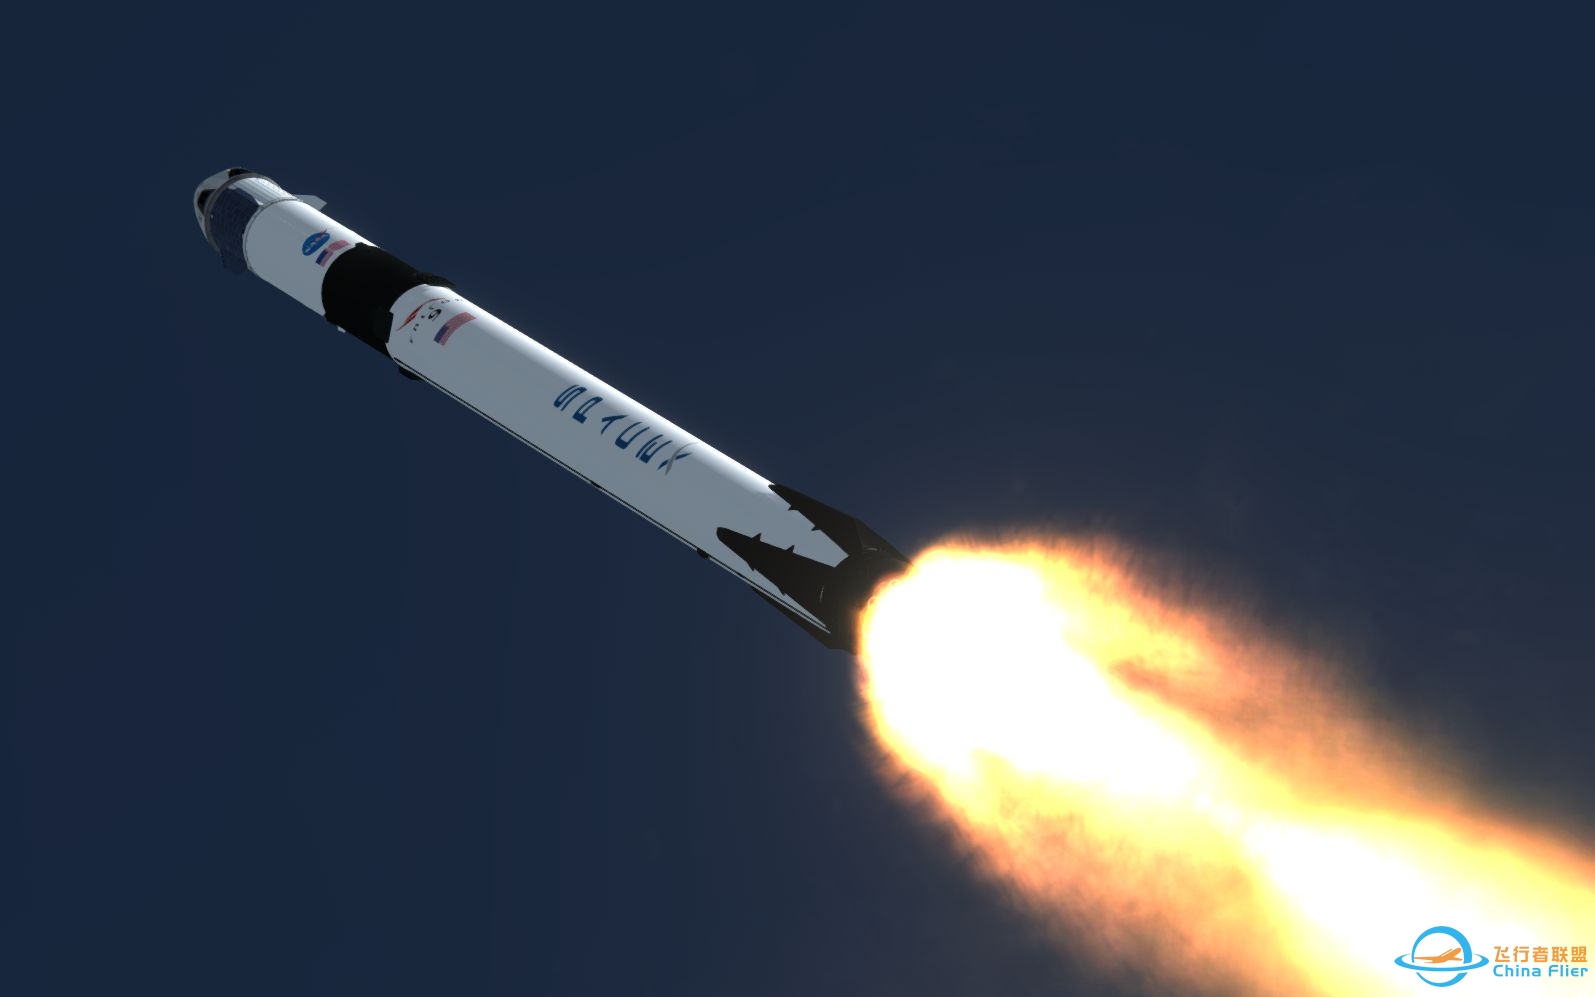 【坎巴拉太空计划】SpaceX 龙飞船载人首飞模拟-4876 